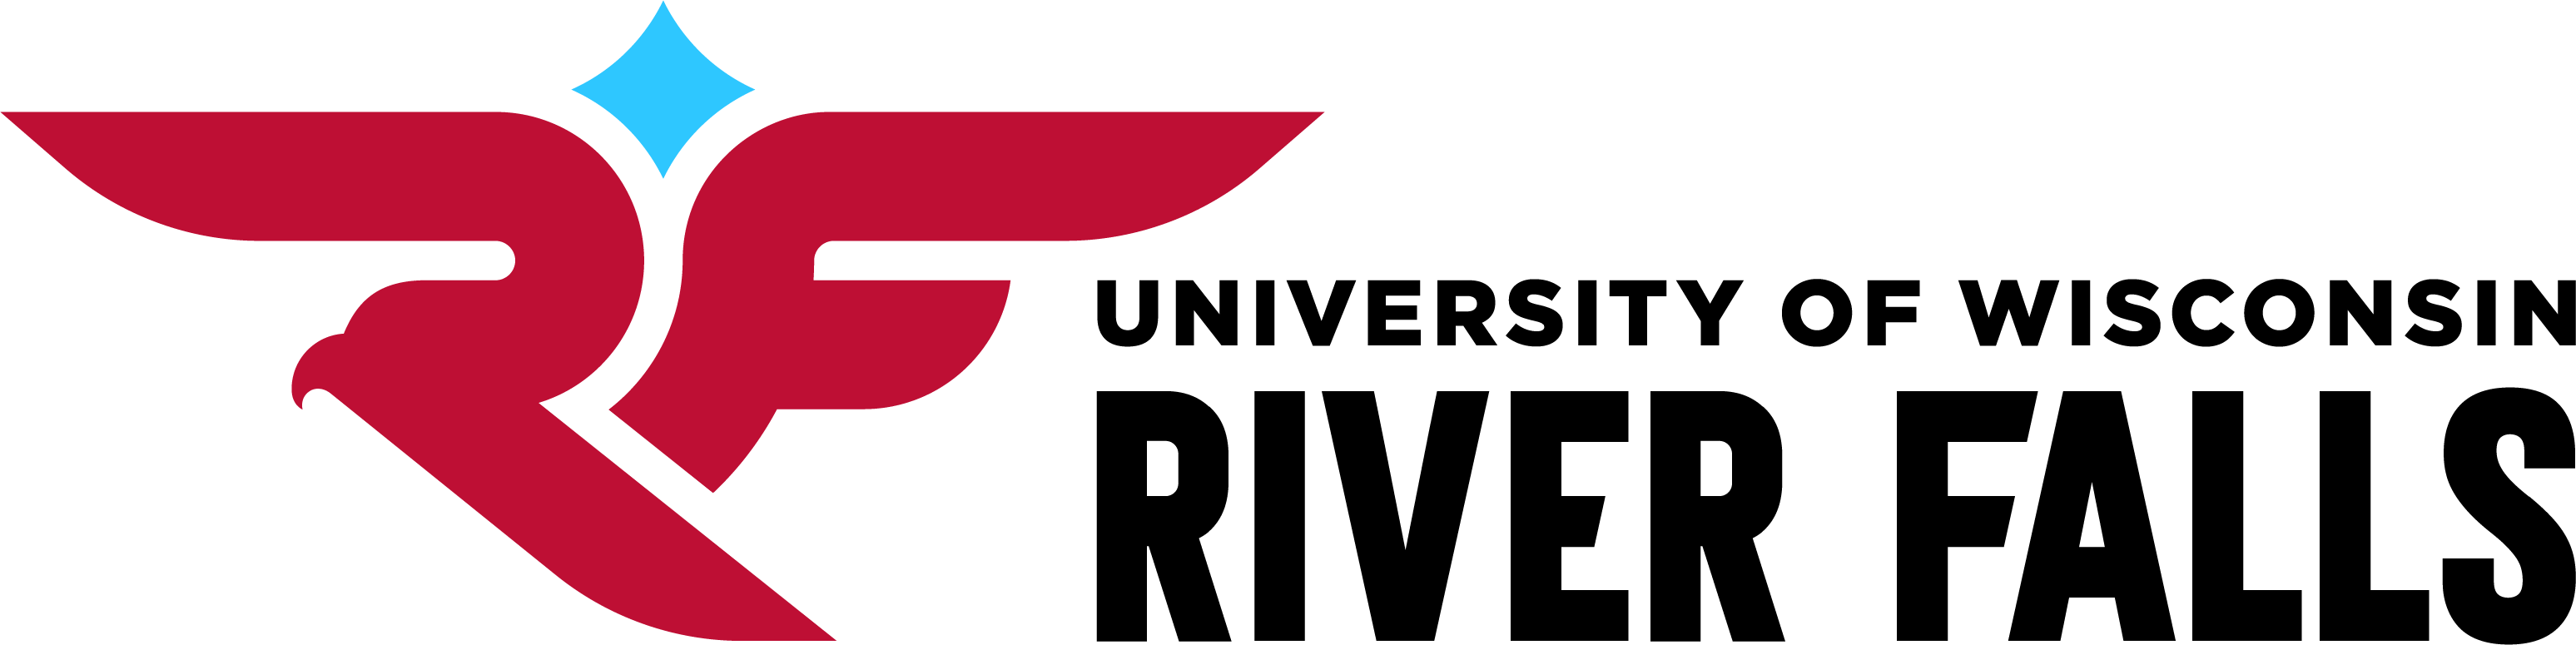 UW - River Falls Logo